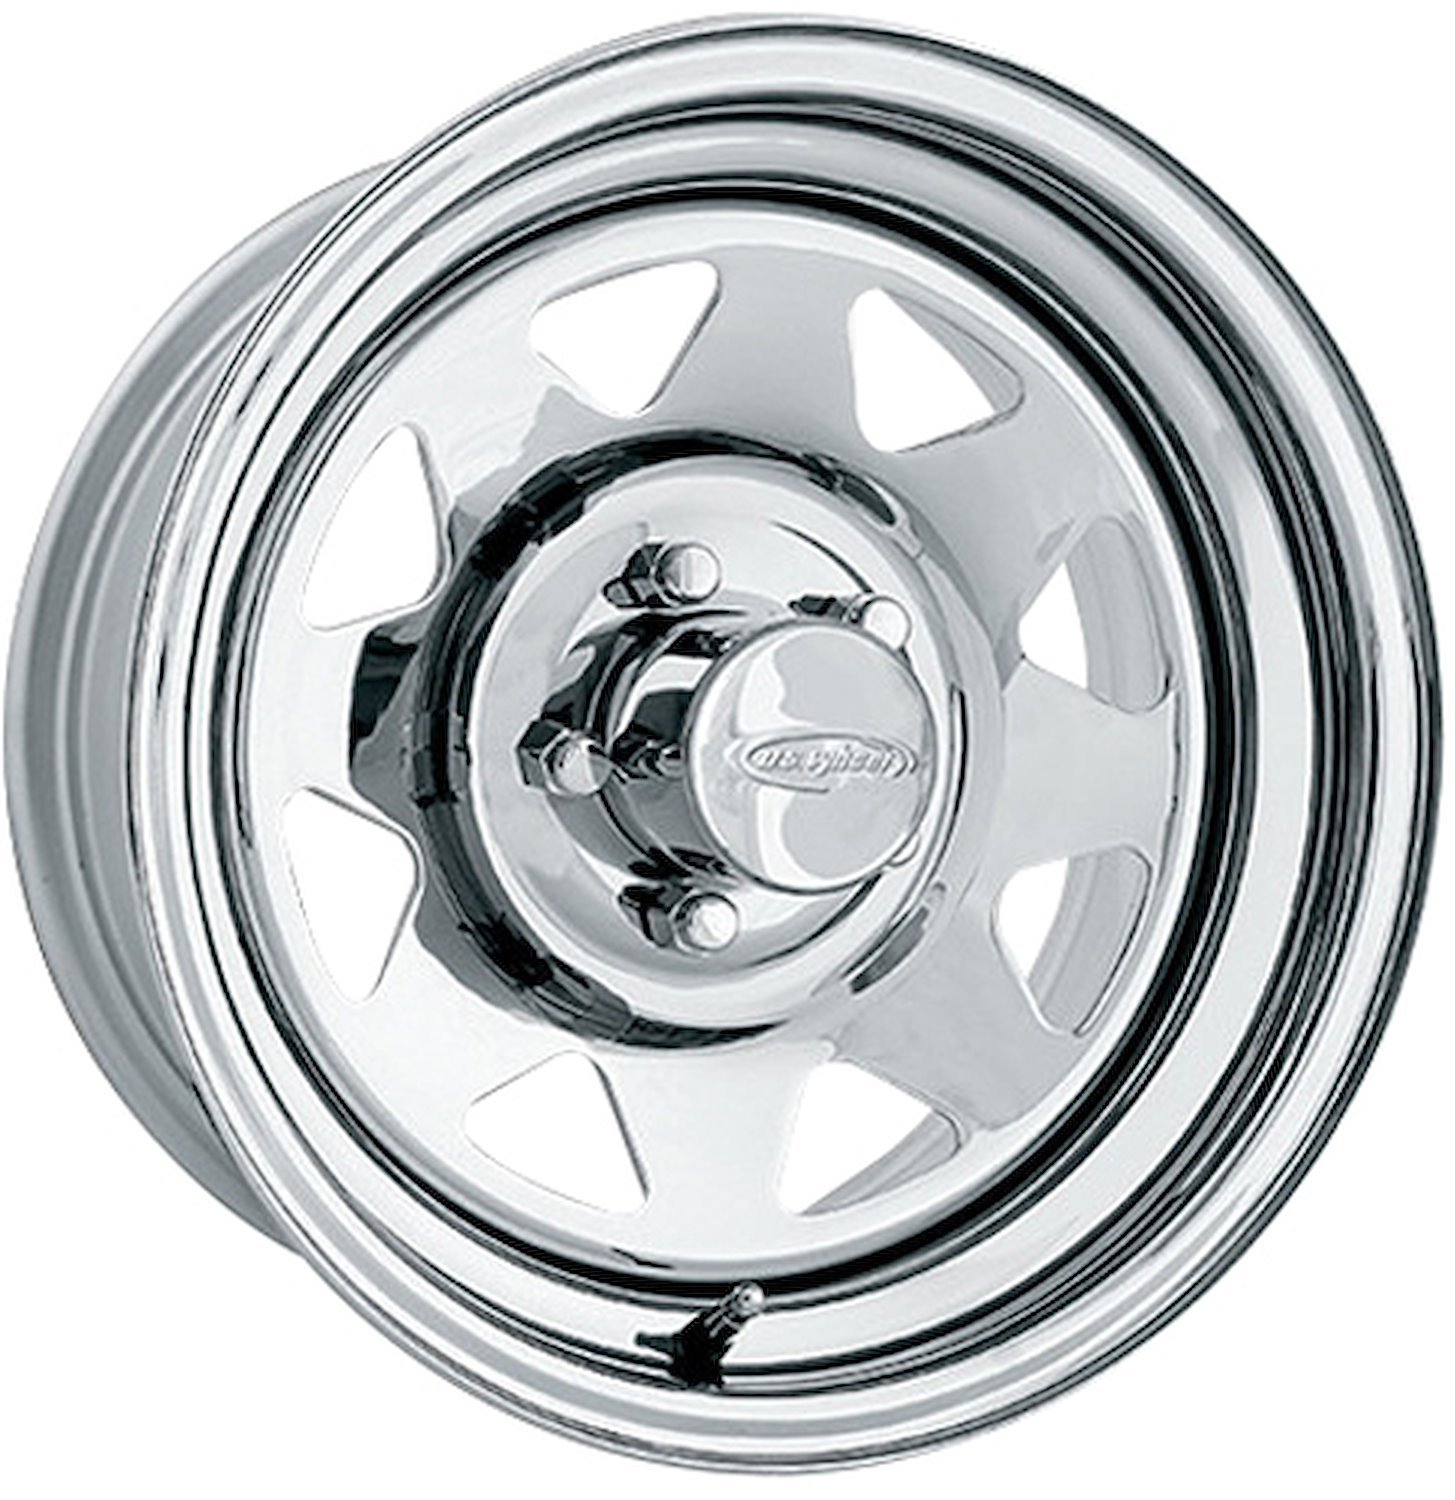 Chrome 8 Spoke Wheel (Series 75) Size: 16.5" x 6.75"